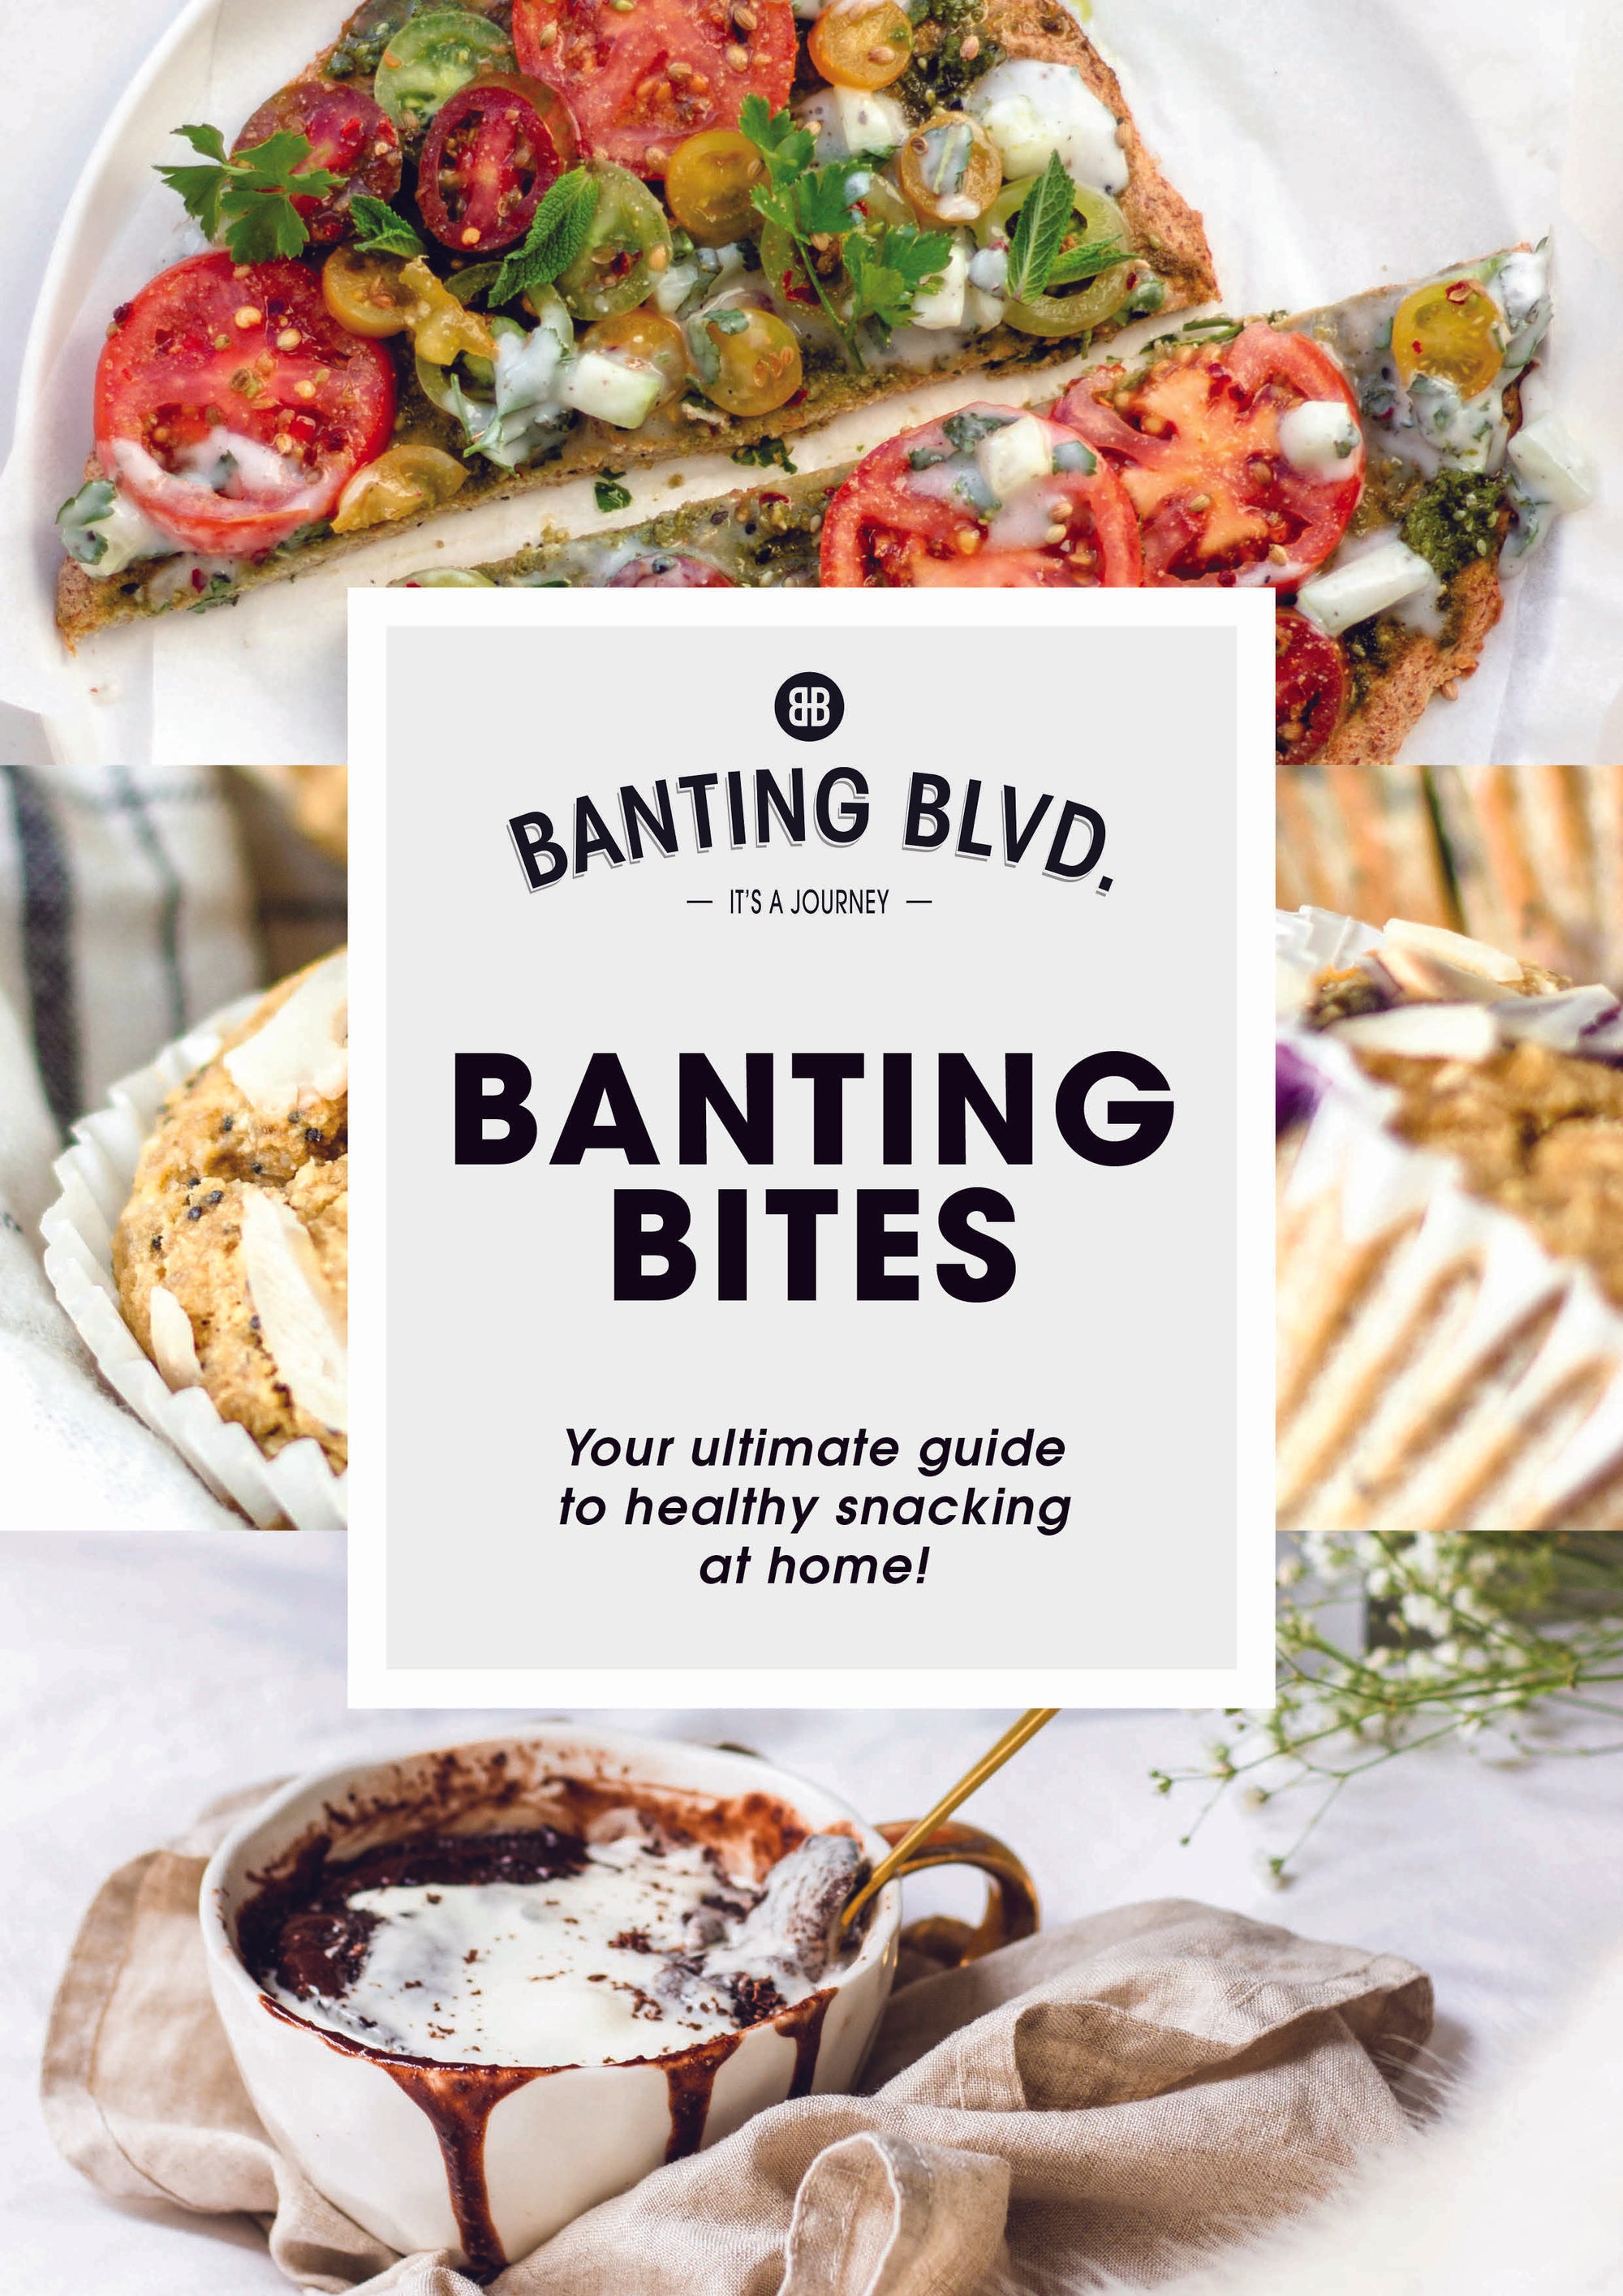 FREE eBOOK: Banting Bites by Banting Blvd